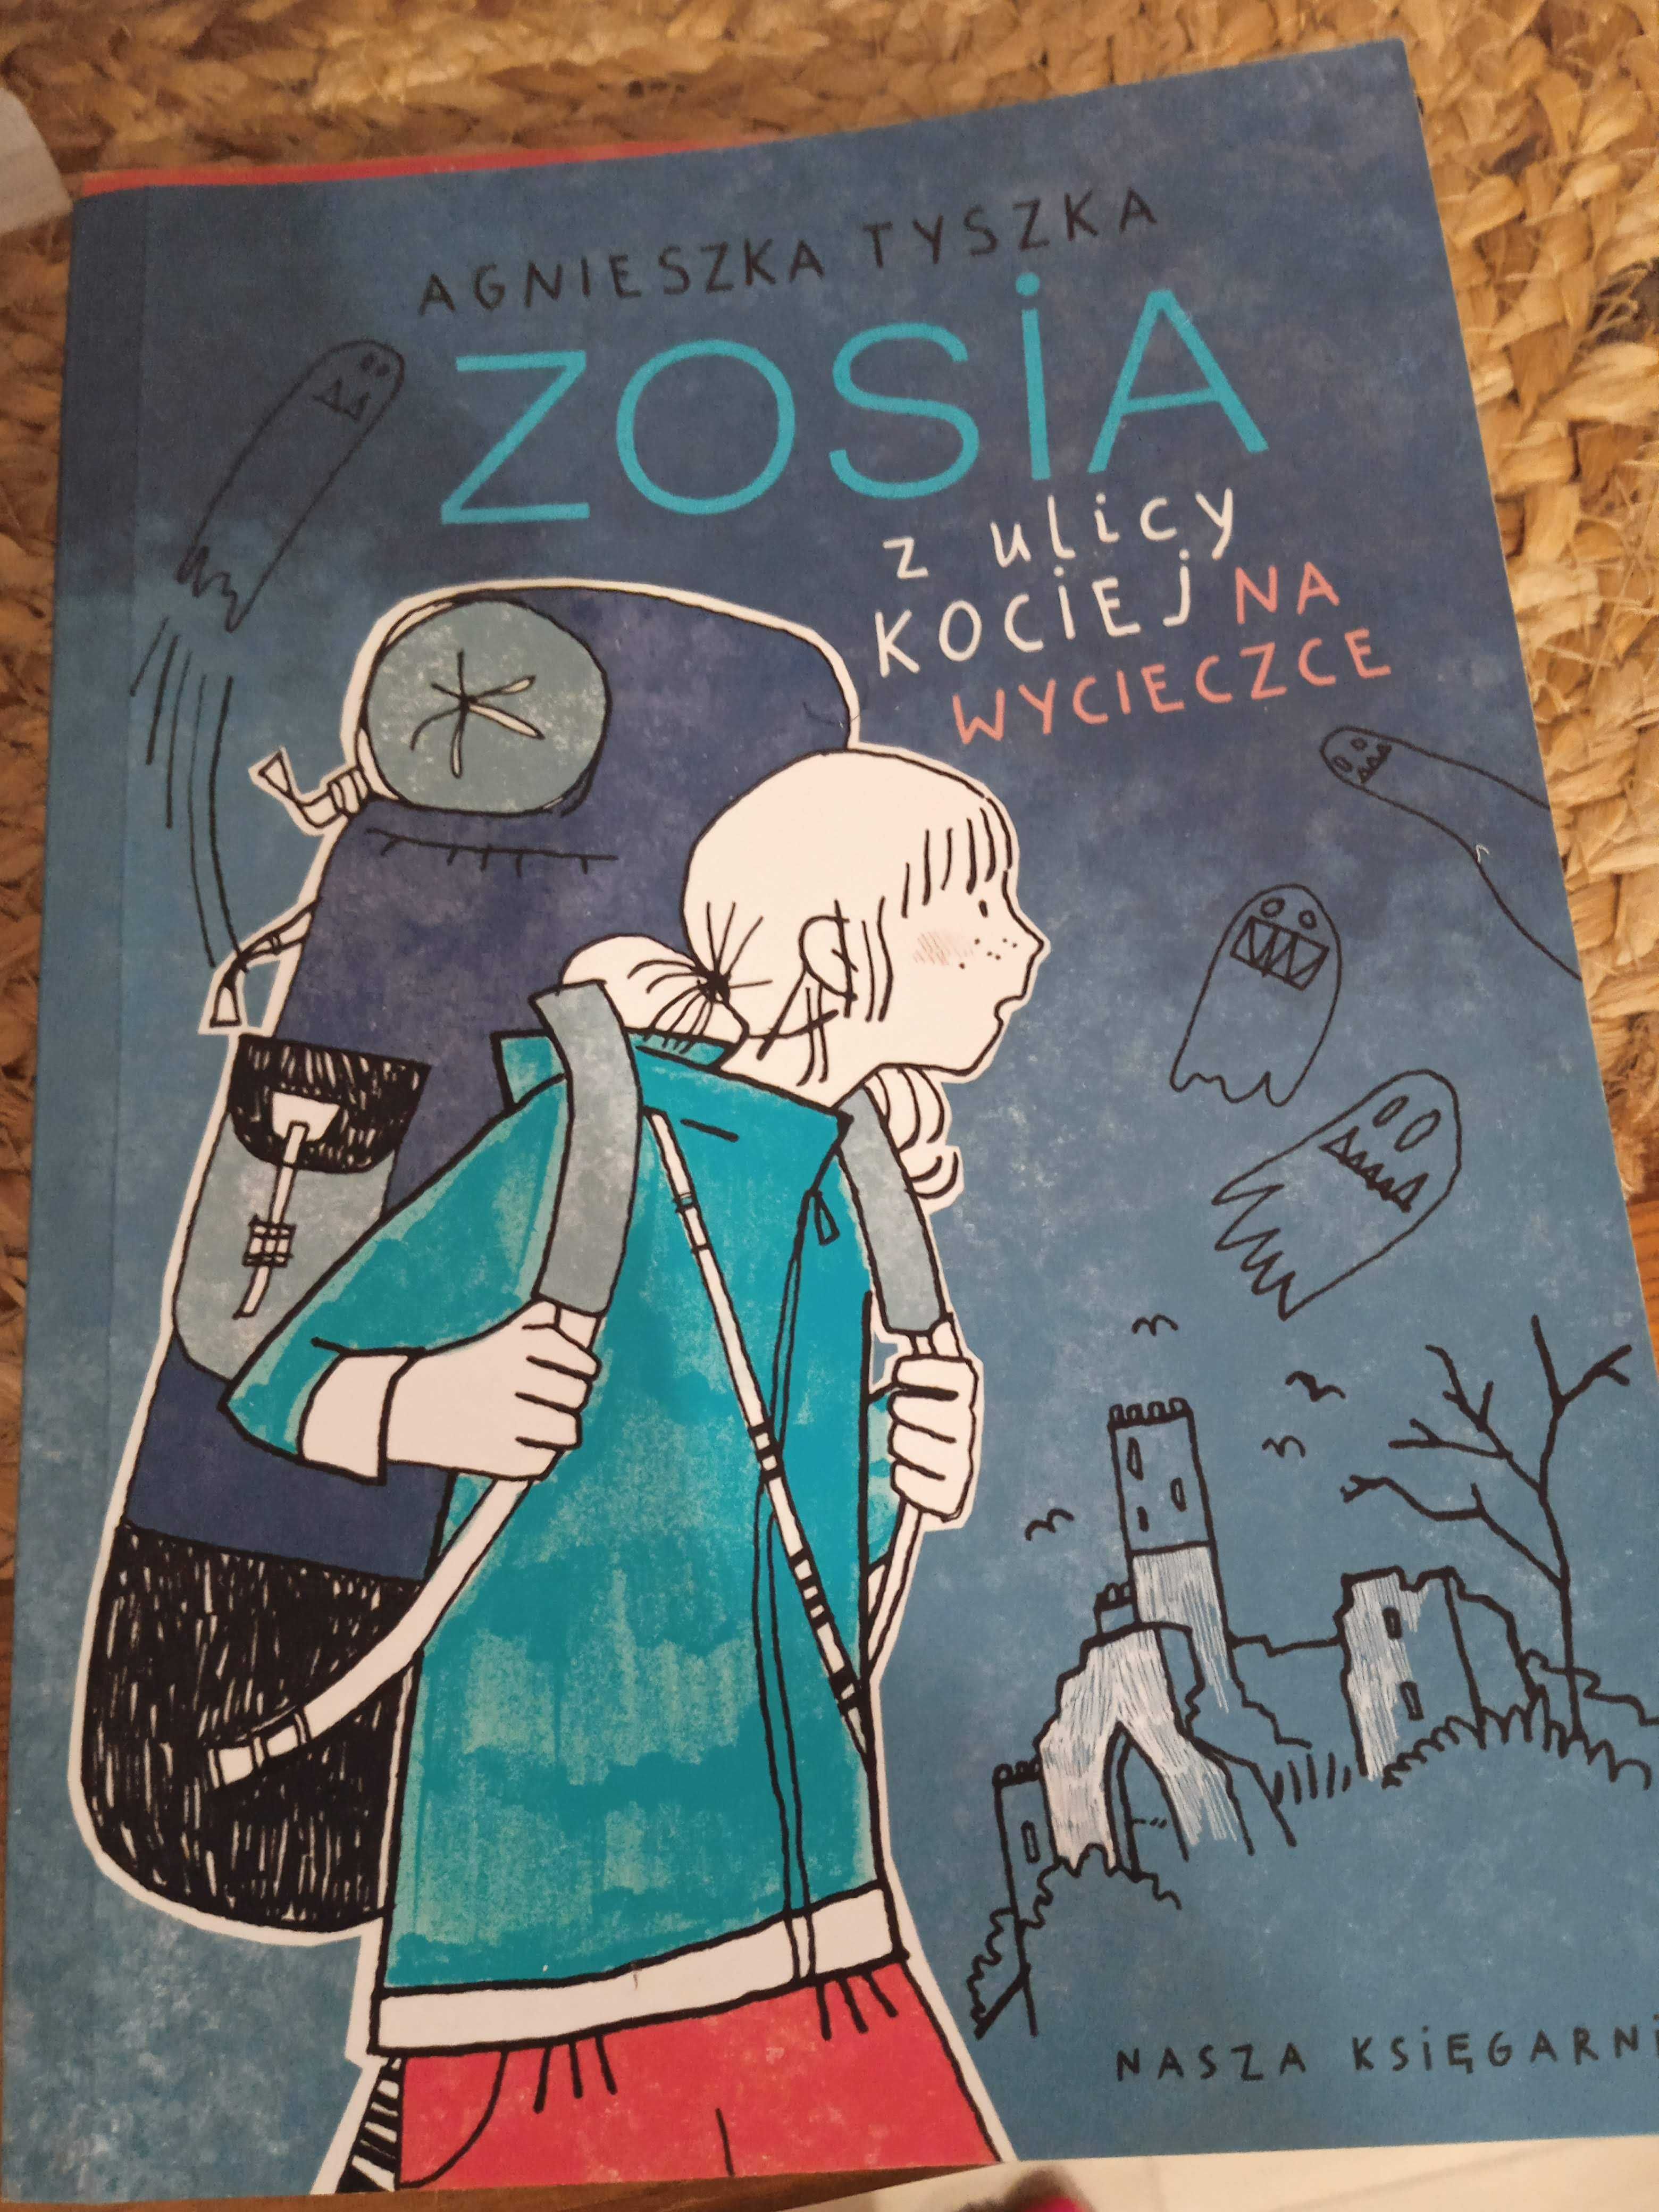 Zosia z ulicy Kociej na wycieczce, autor Agnieszka Tyszka